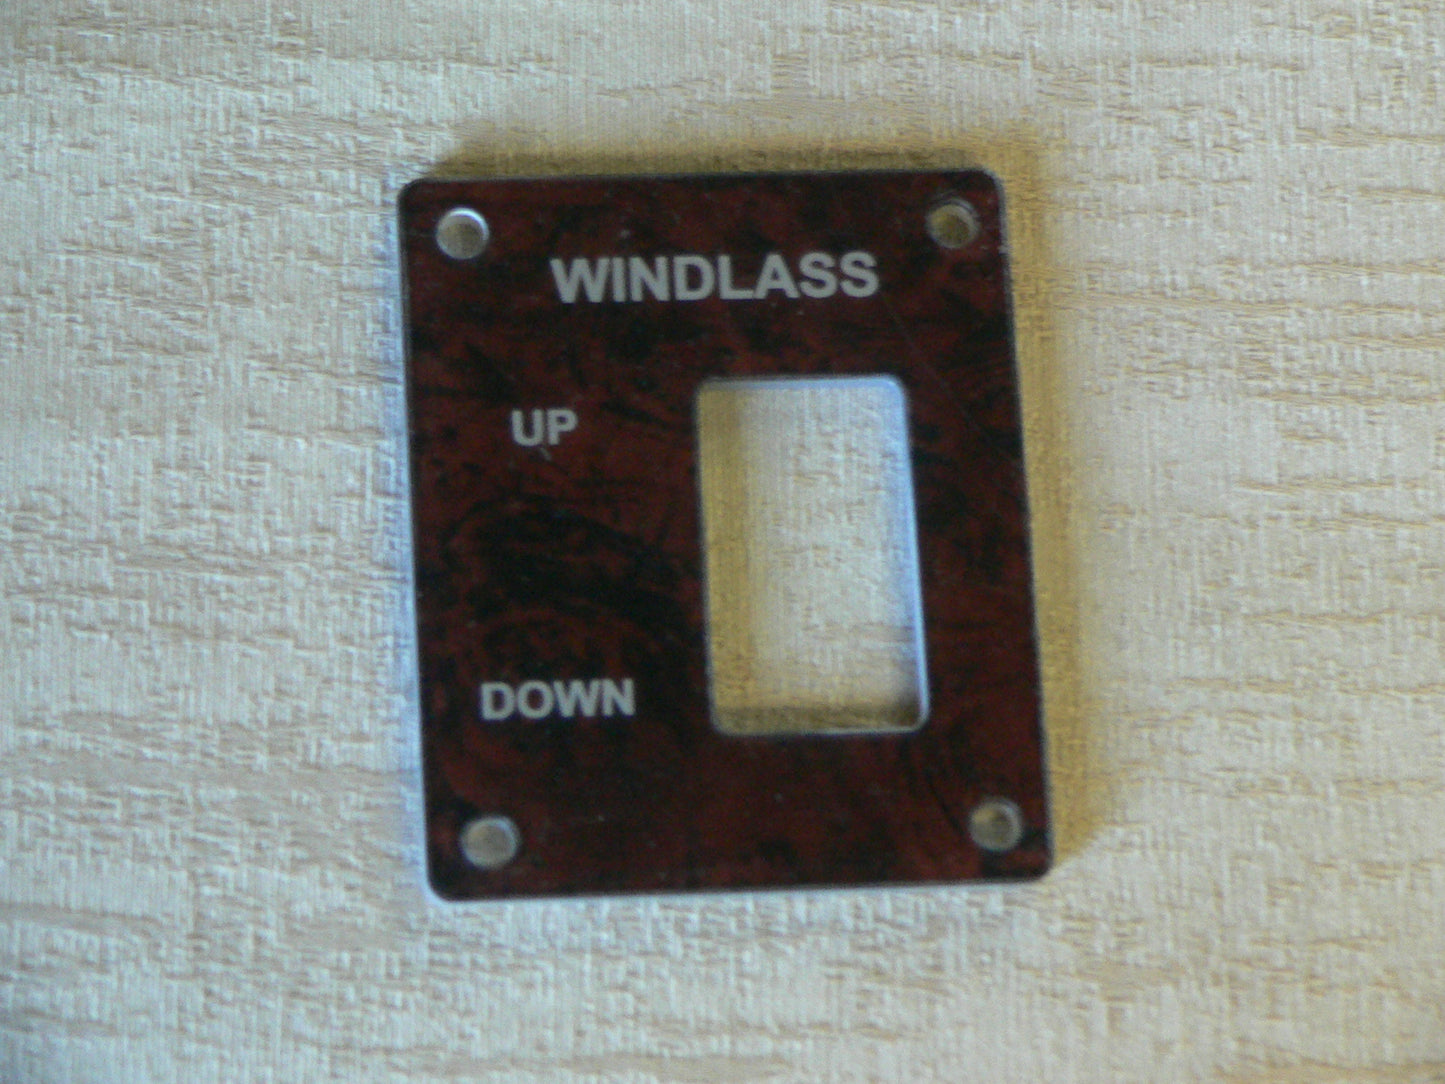 Windlass control - Rocker switch style 3" x 2.5"